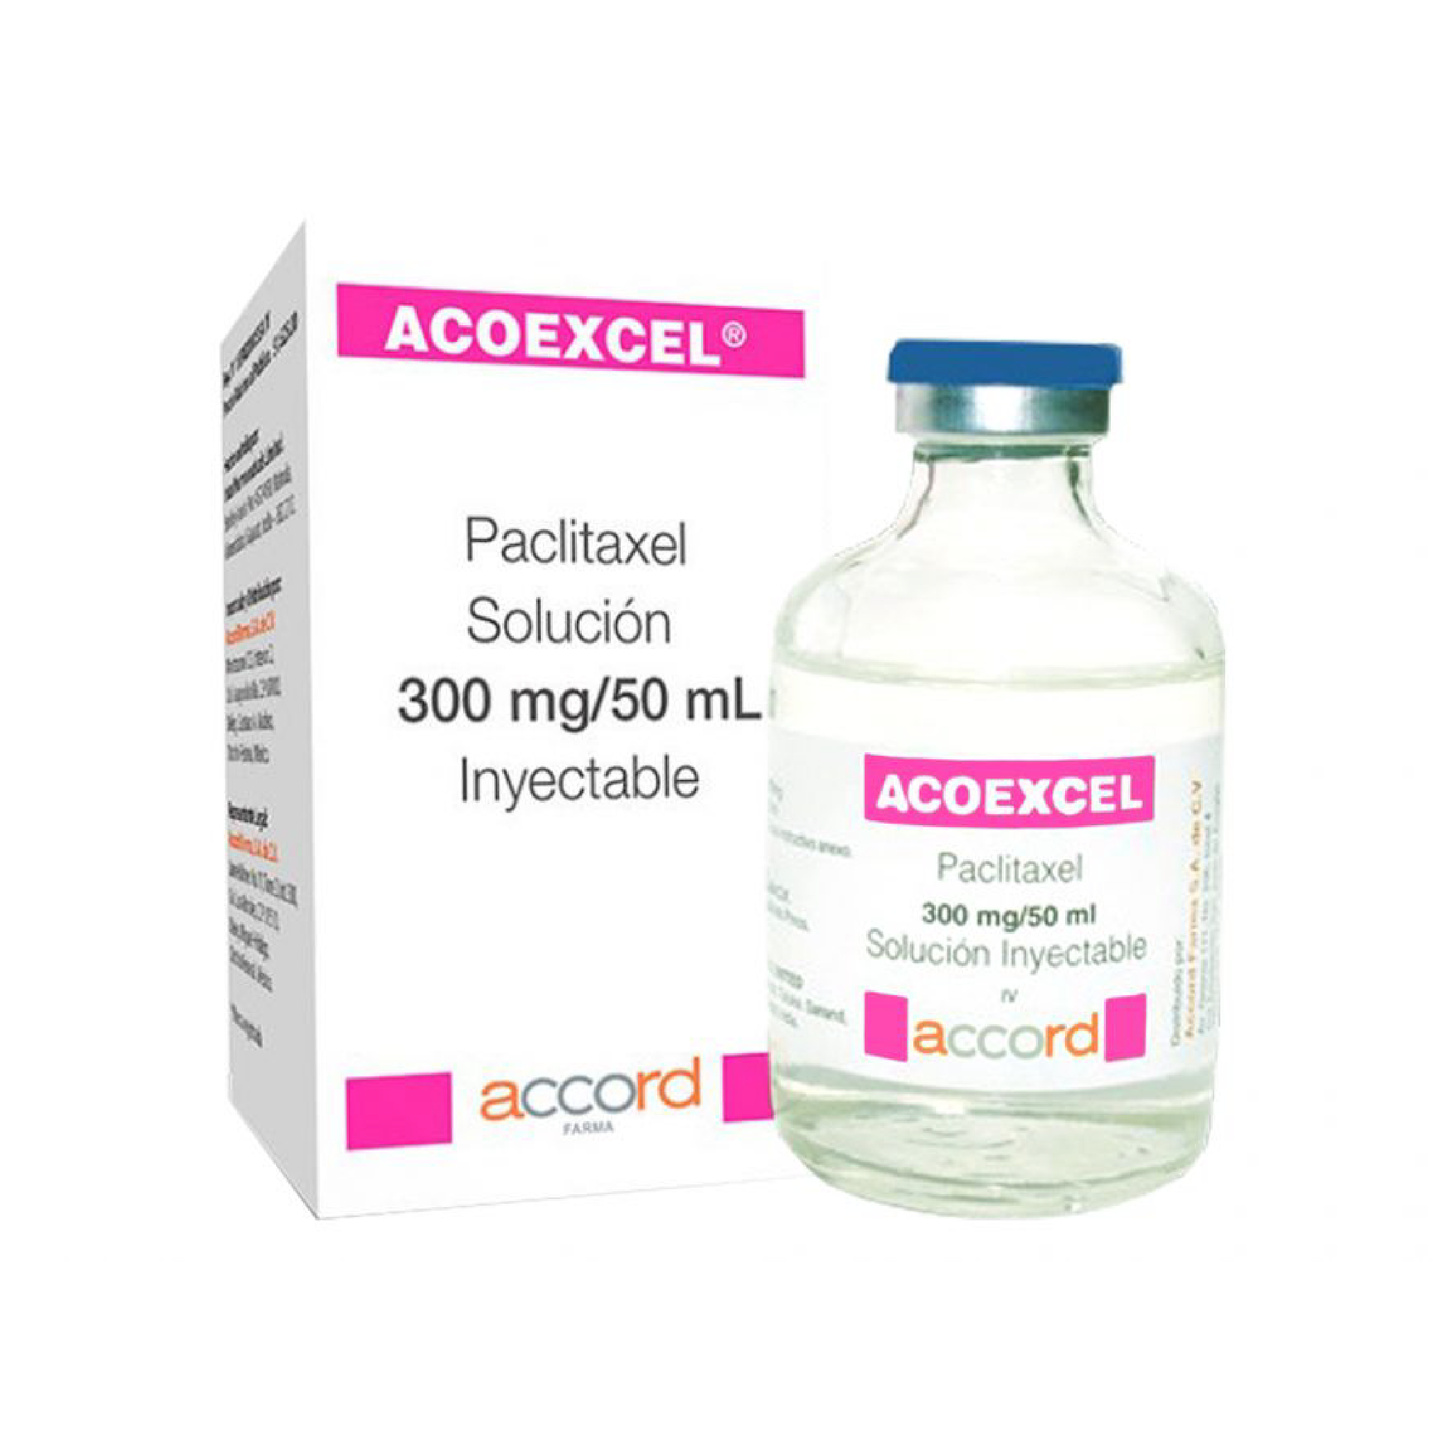 ACOEXCEL 300 mg/50 ml